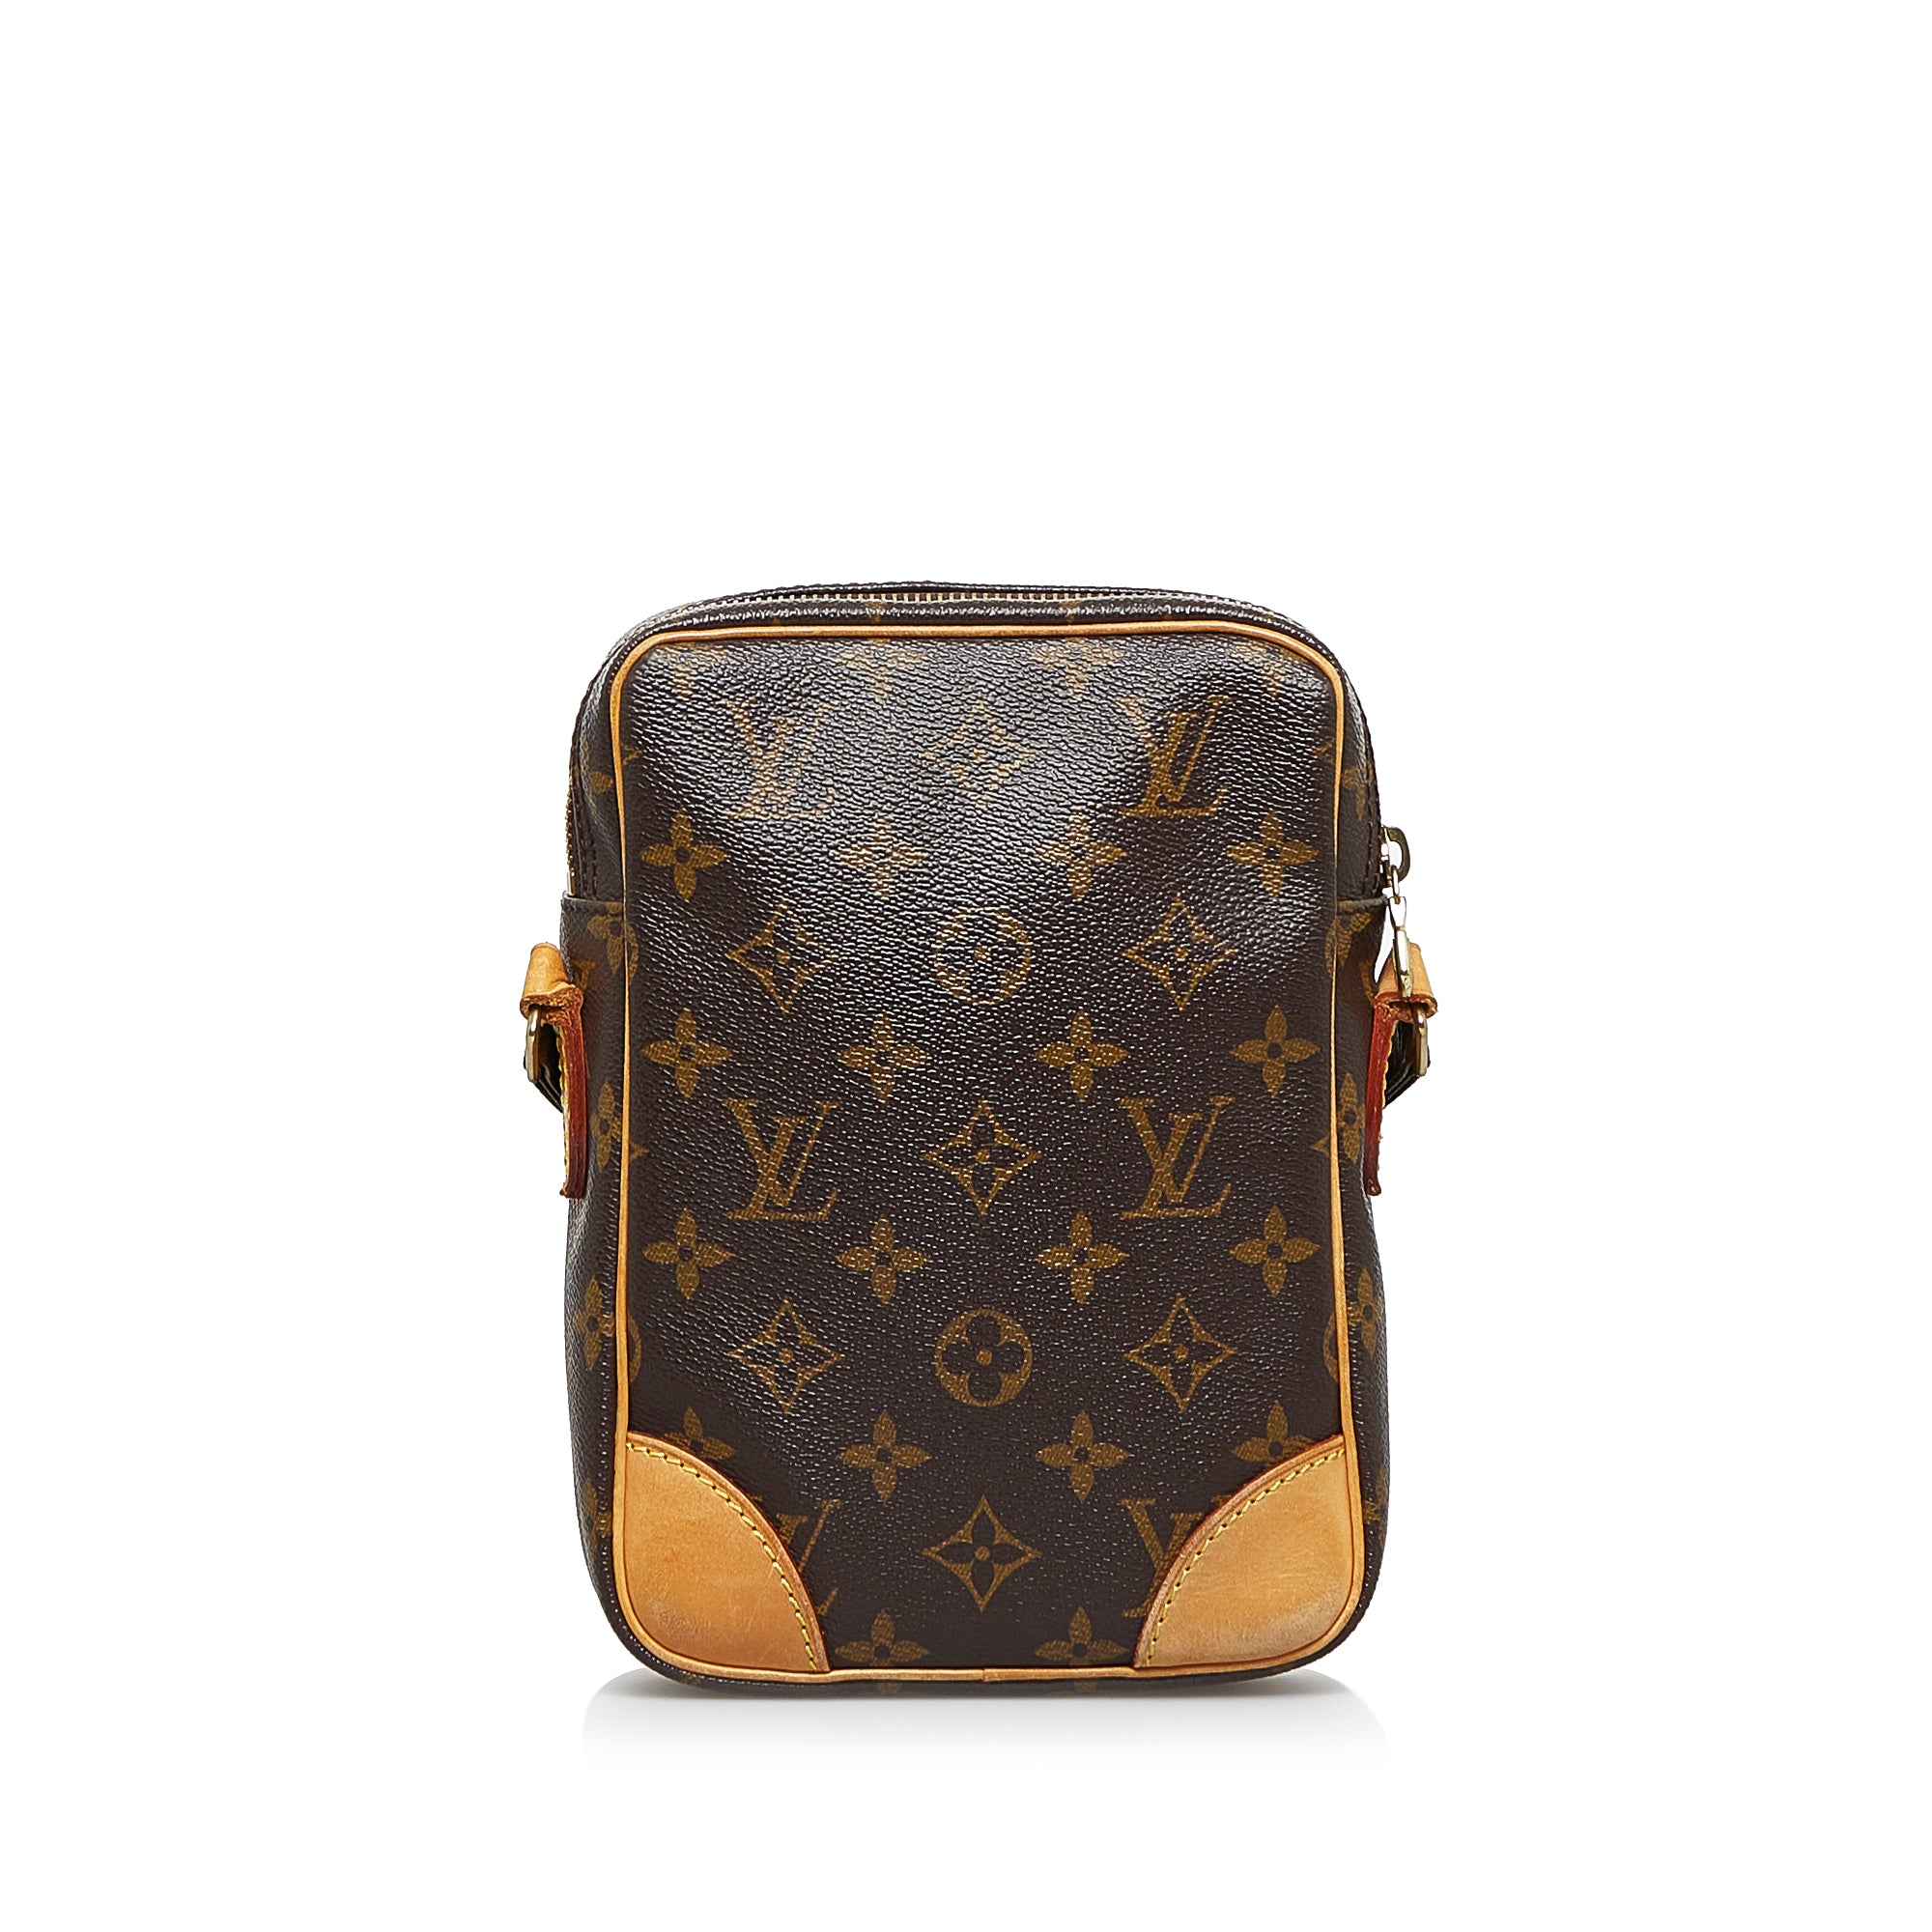 Louis Vuitton - Authenticated Danube Bag - Denim - Jeans Brown Plain for Men, Good Condition